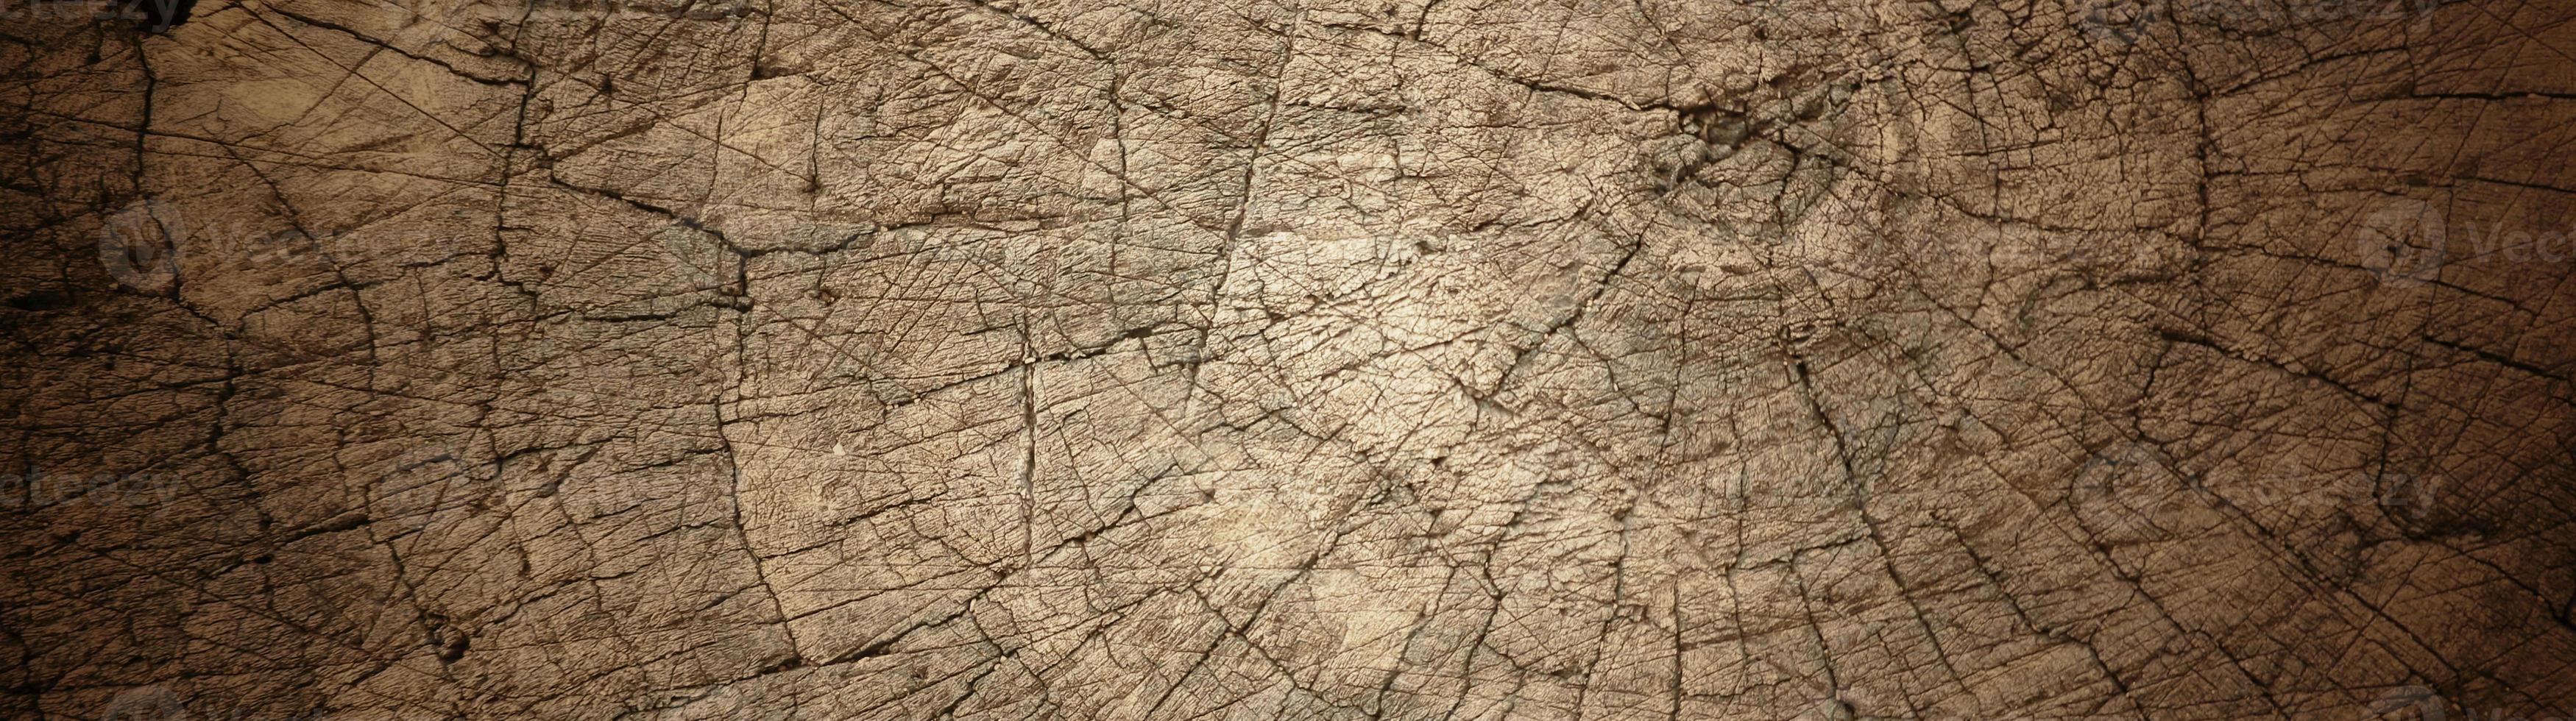 Panorama alten Grunge strukturierten hölzernen Hintergrund. Holzhintergrund Textur Oberfläche. Holzbohlen Hintergrund foto